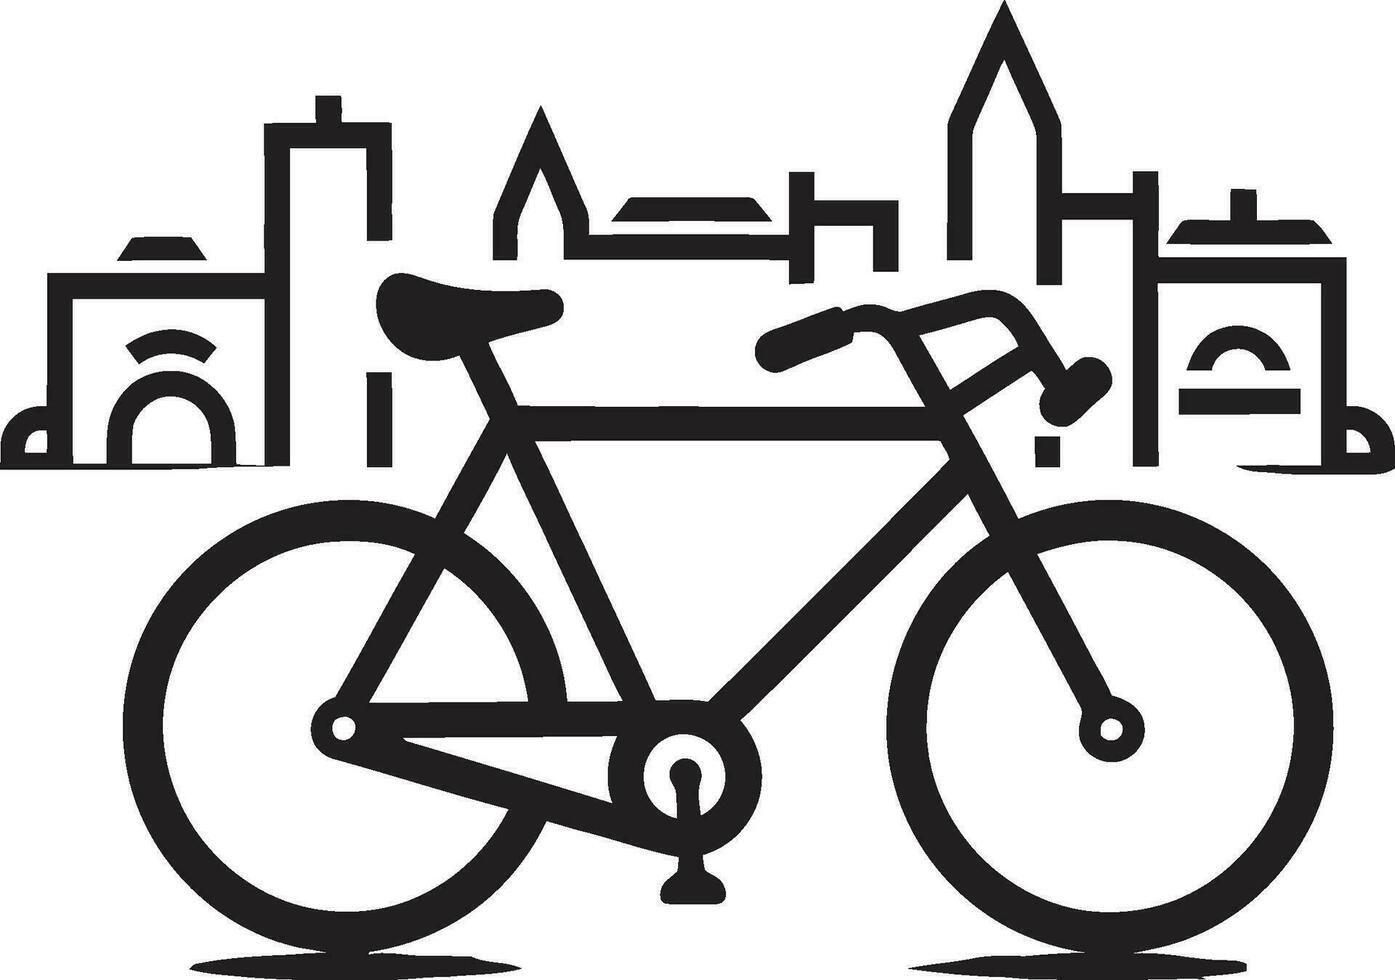 pédale points de vue iconique bicyclette marque paysage urbain tourner vélo vecteur illustration